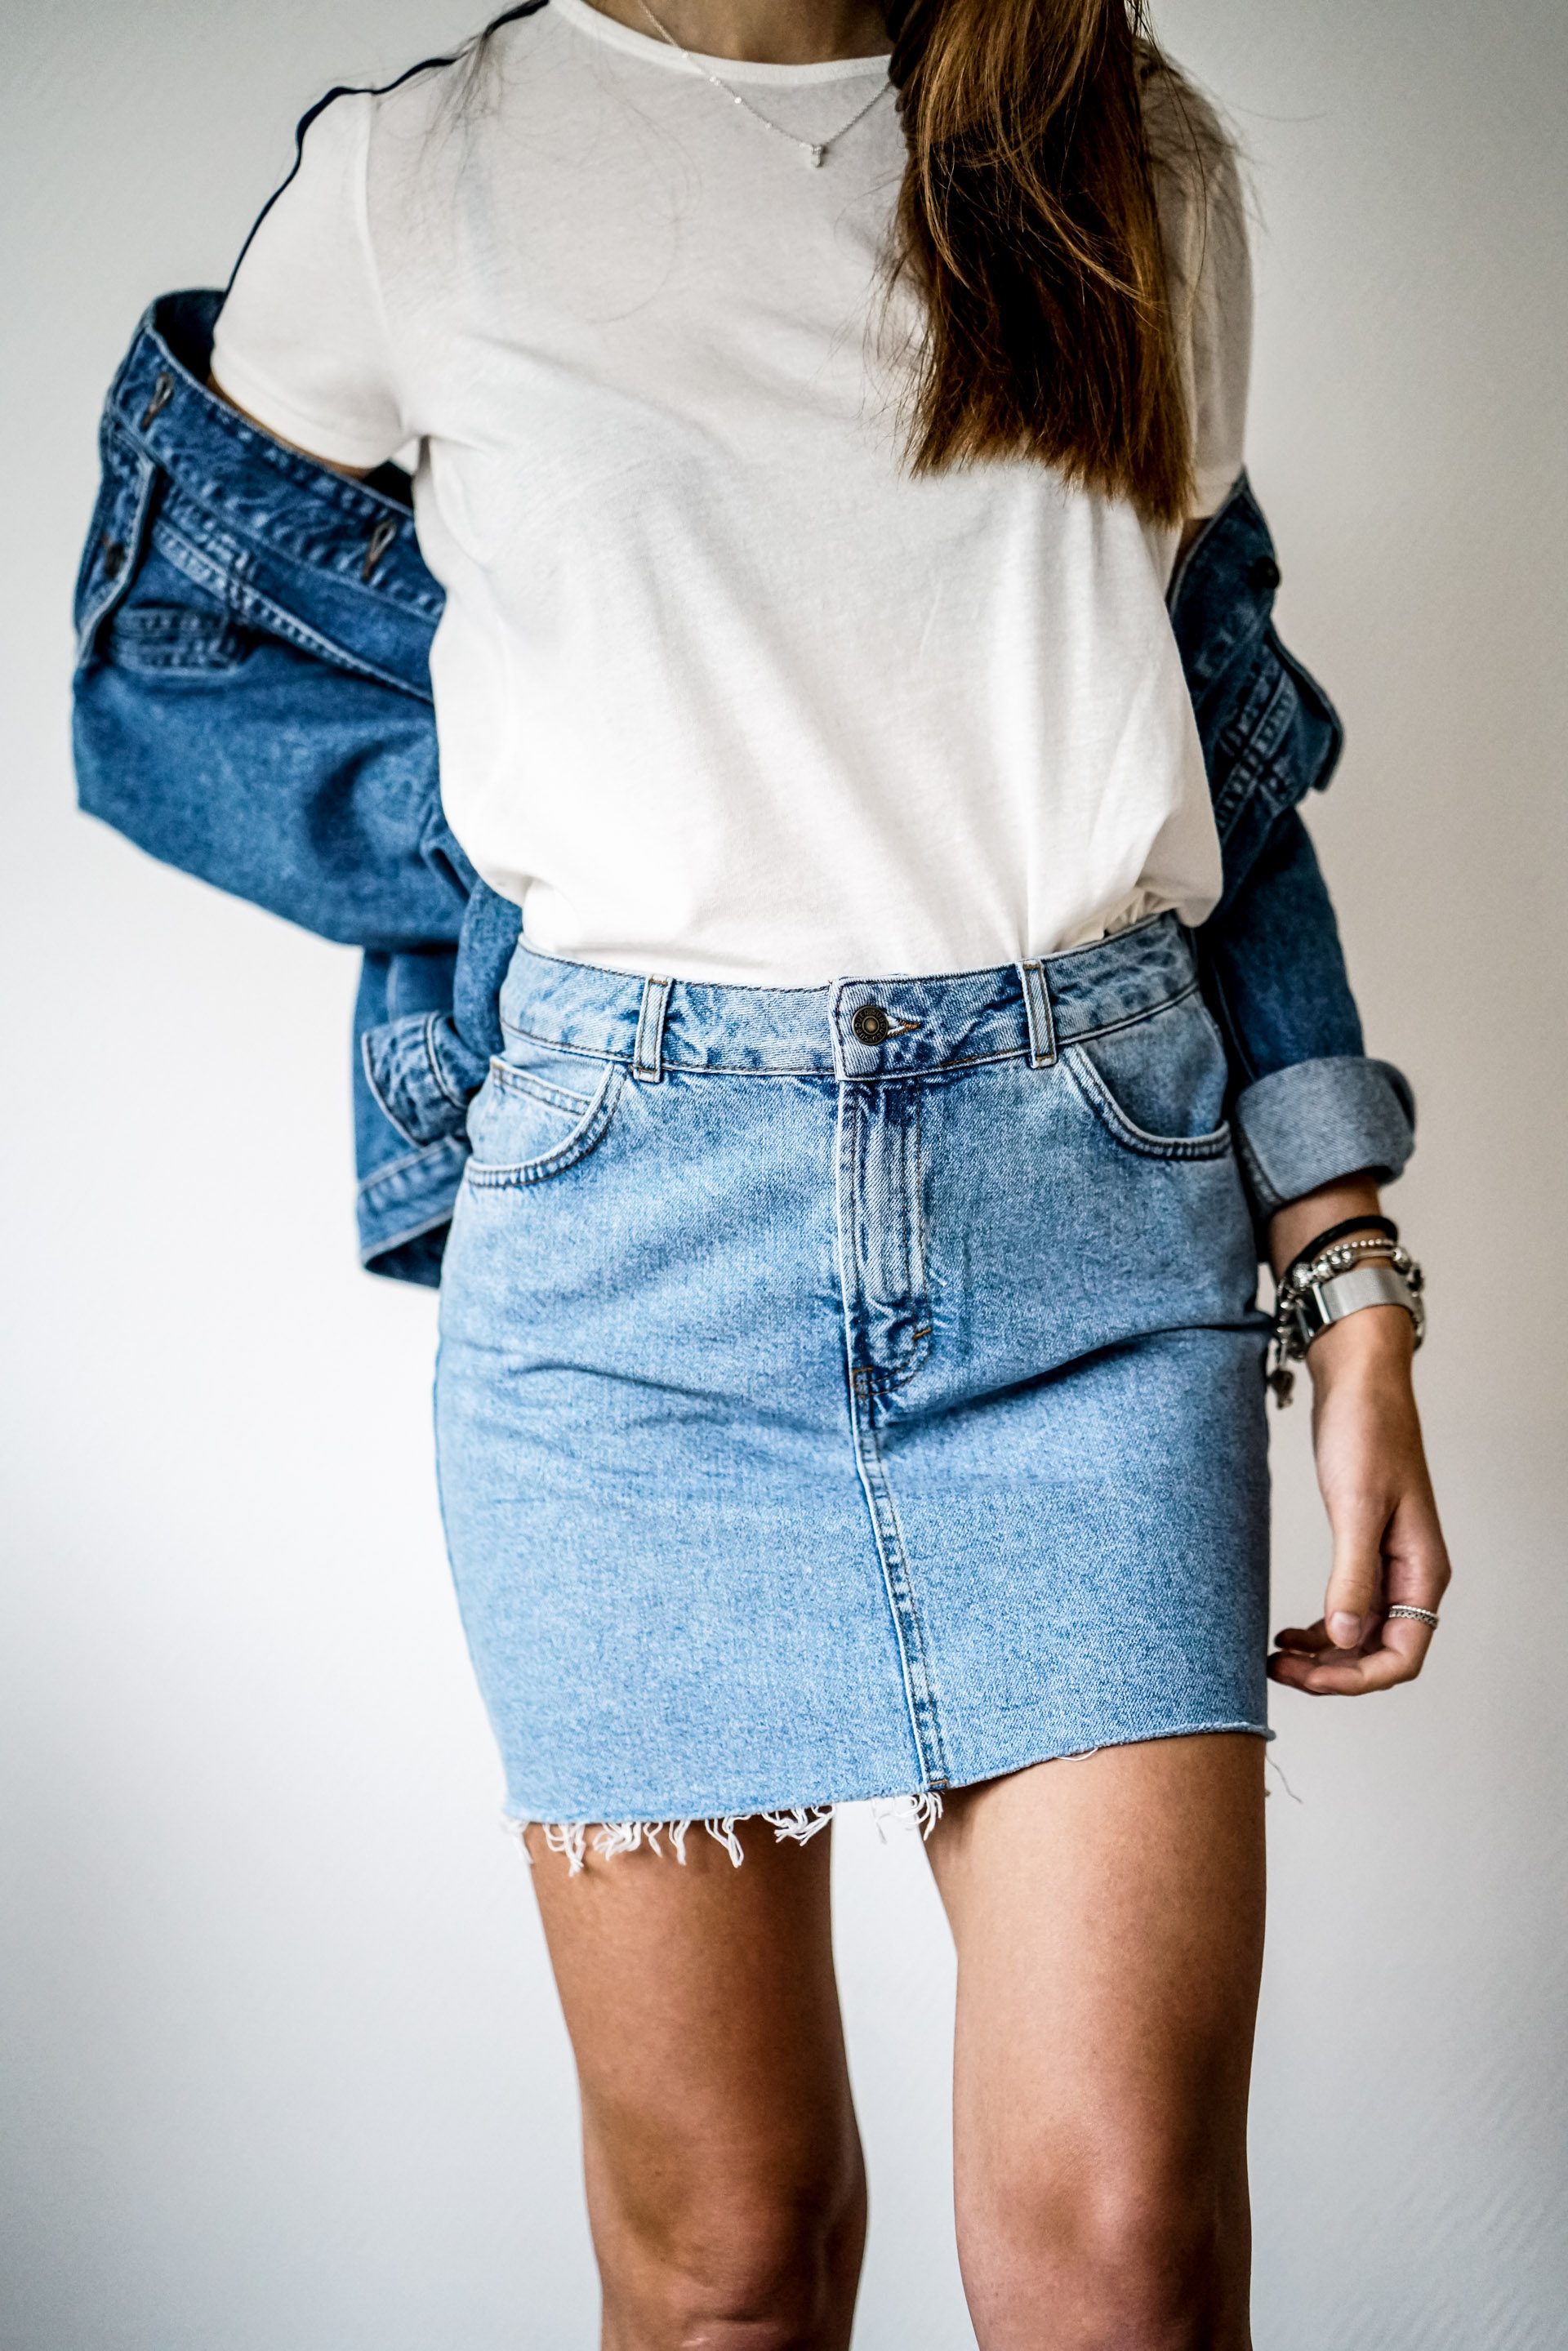 Denim Skirt, Denim Jacket and White Tee || Dreaming of Summer